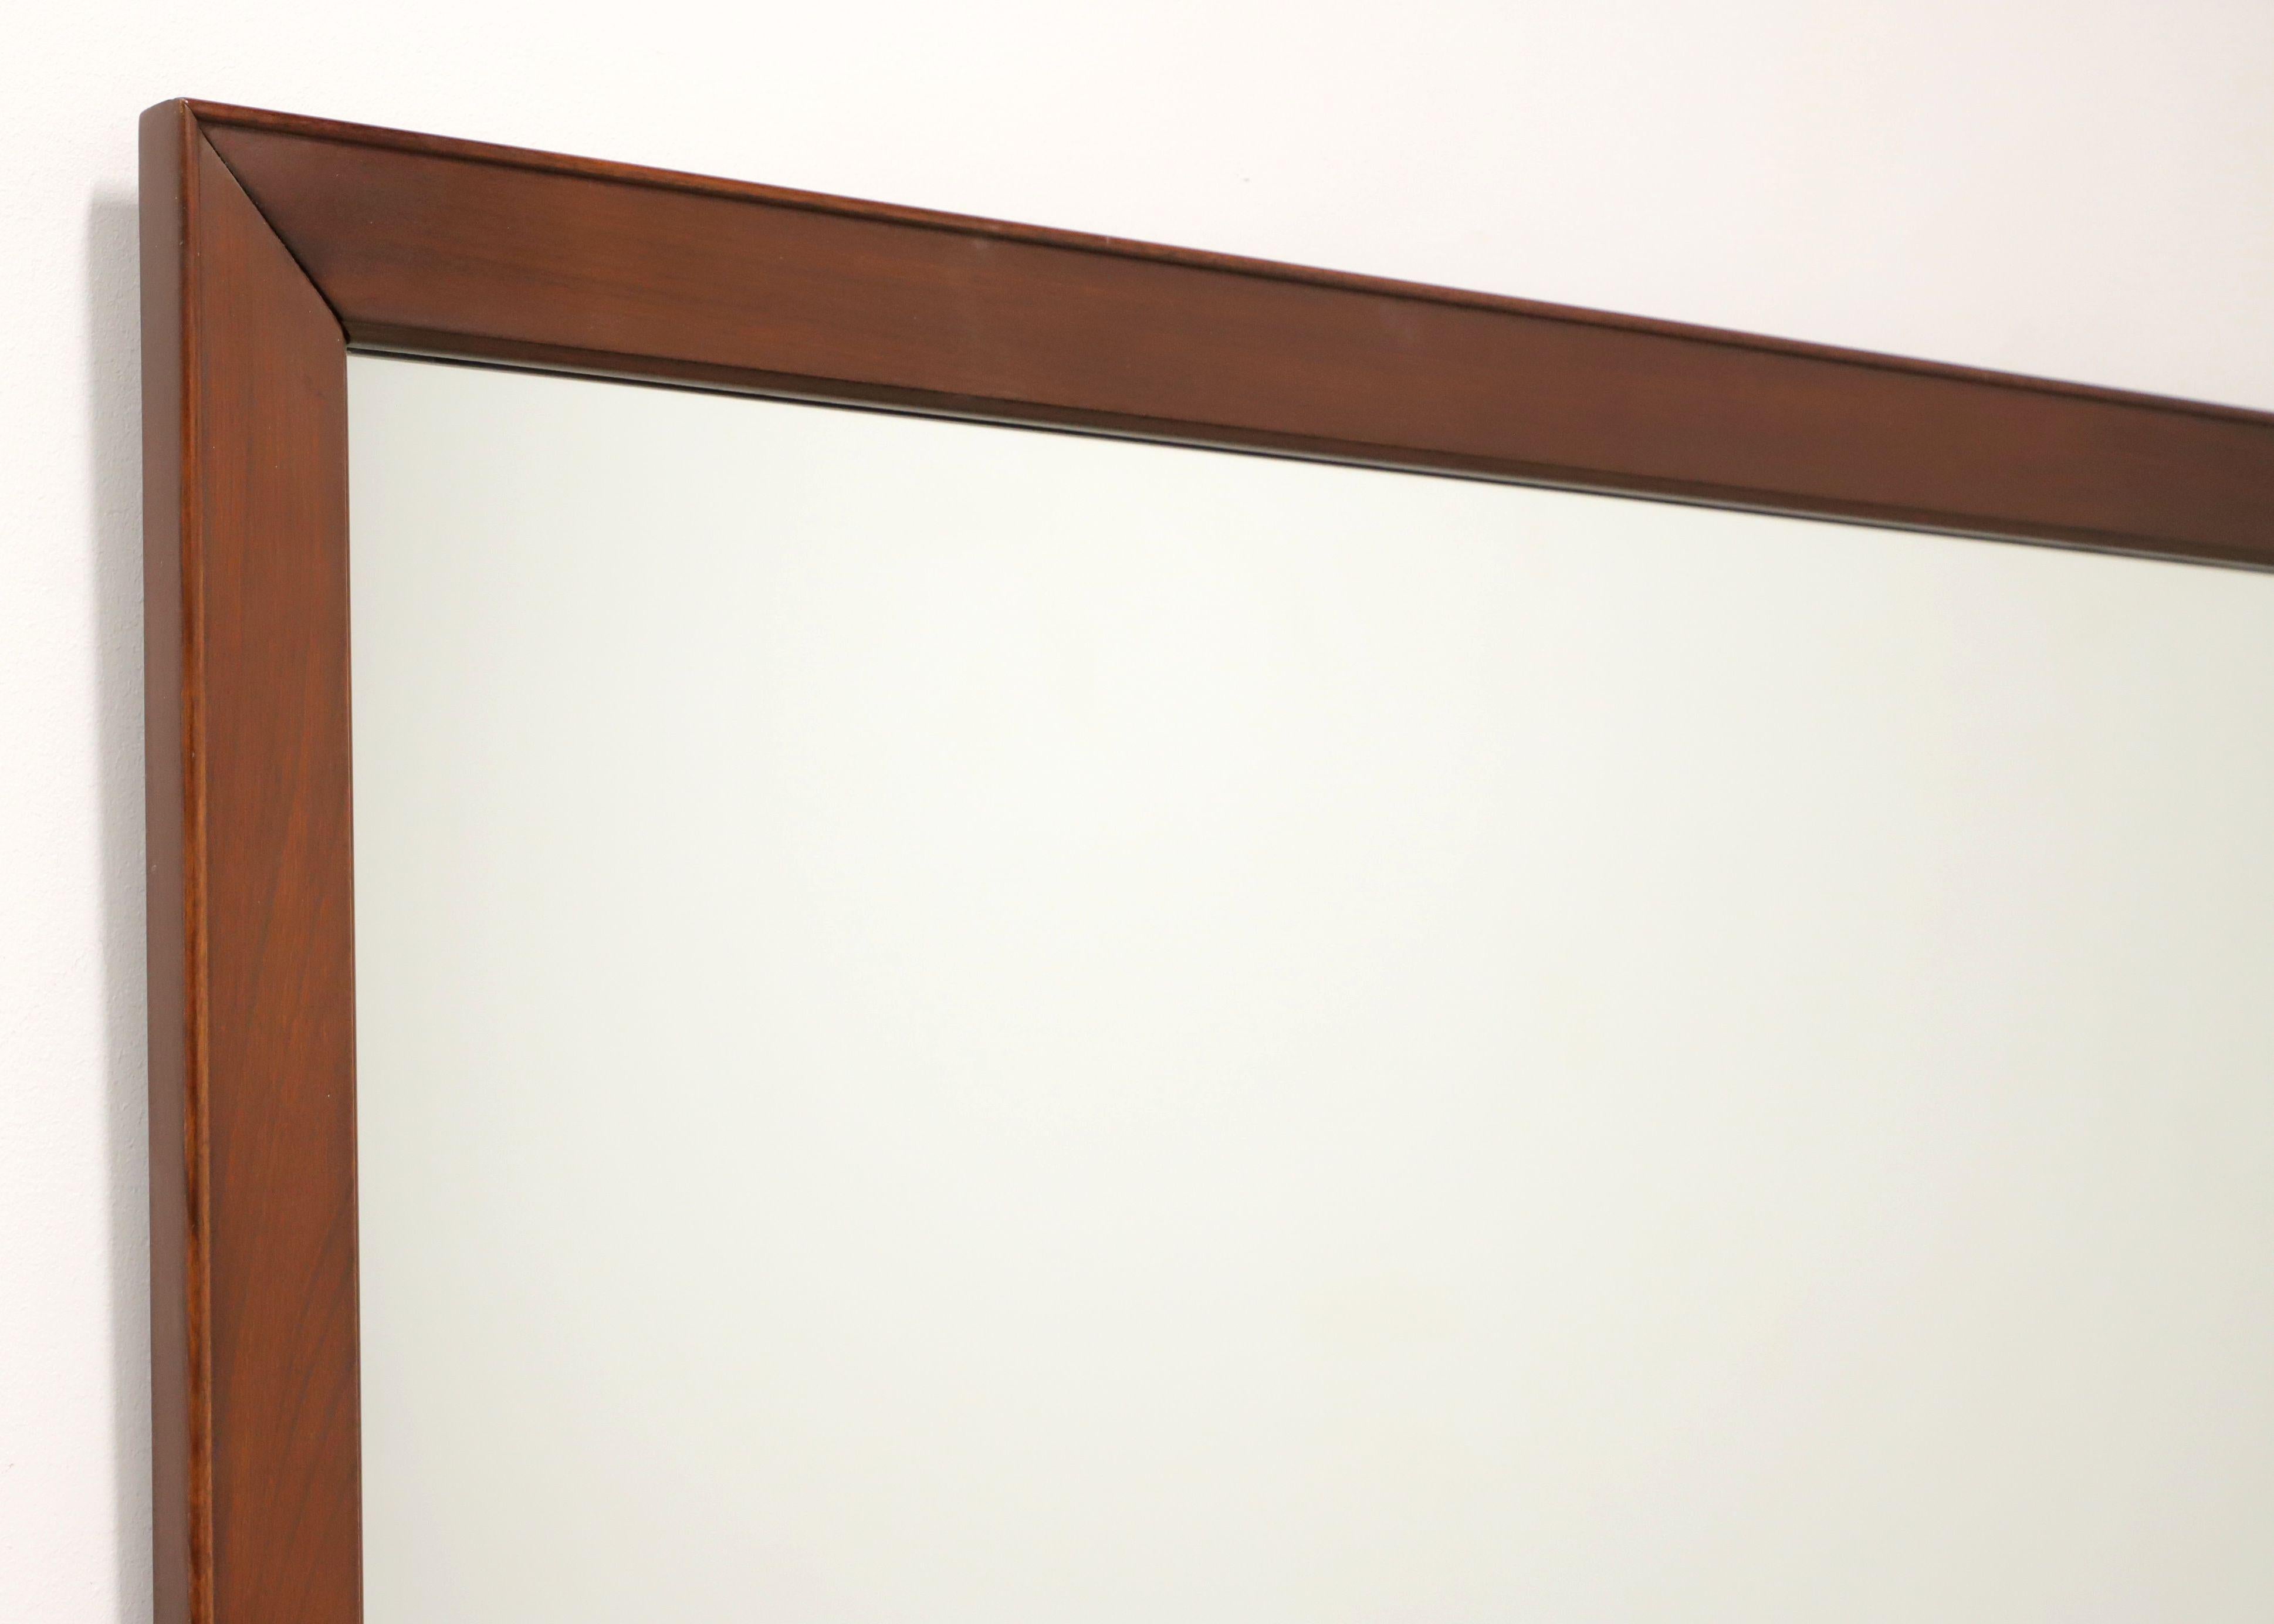 Eine rechteckige Kommode oder ein Wandspiegel im traditionellen Stil vom hochwertigen Möbelhersteller Craftique. Spiegelglas in einem massiven Mahagoni-Rahmen mit glatter Kante und Mellowax-Finish. Hergestellt in Mebane, North Carolina, USA, im